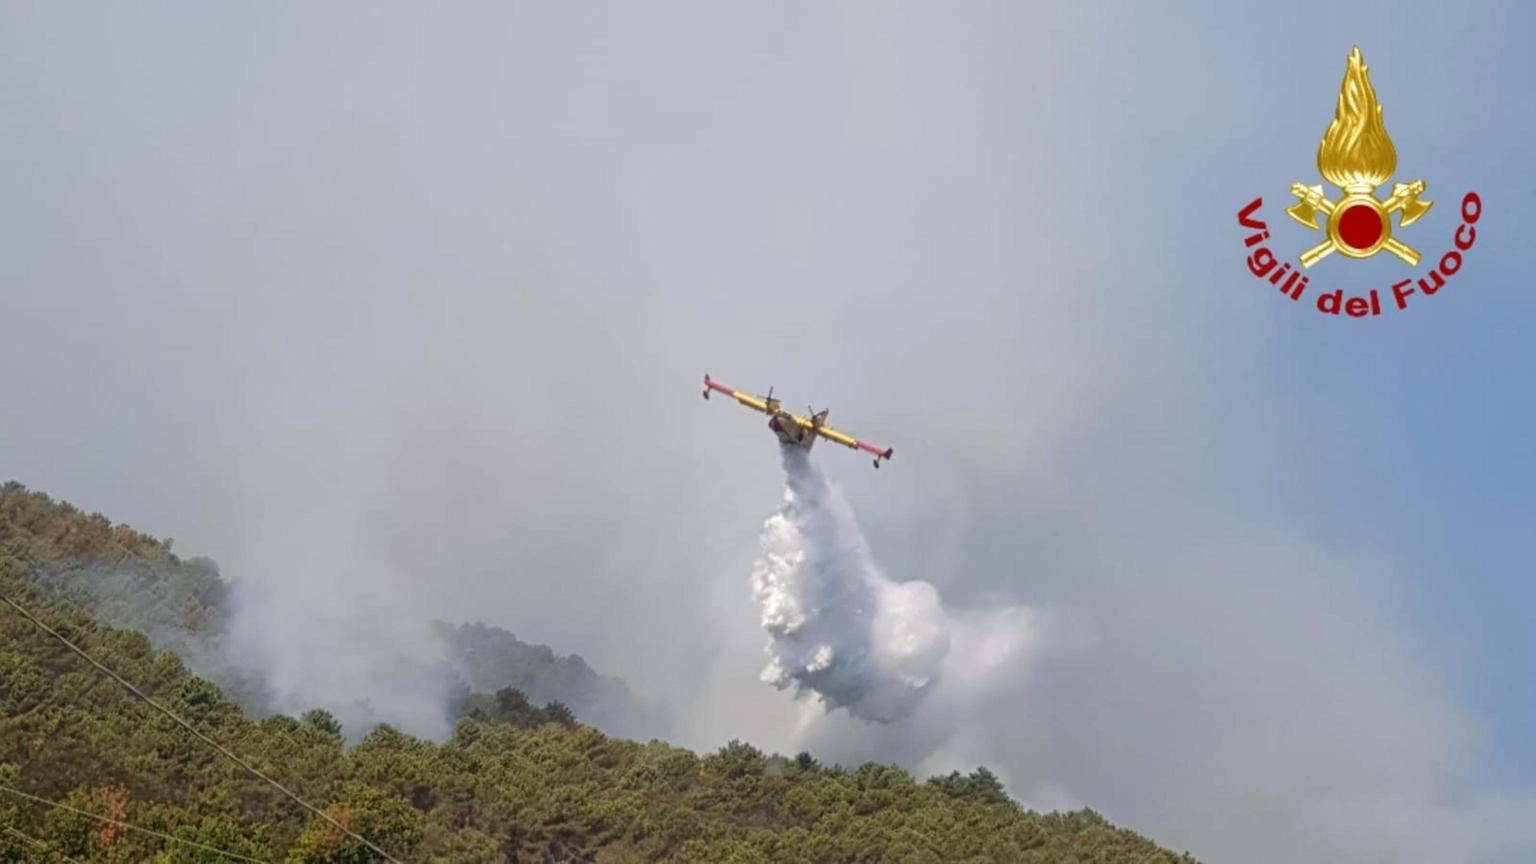 Incendi boschivi, oggi 25 richieste d'intervento aereo